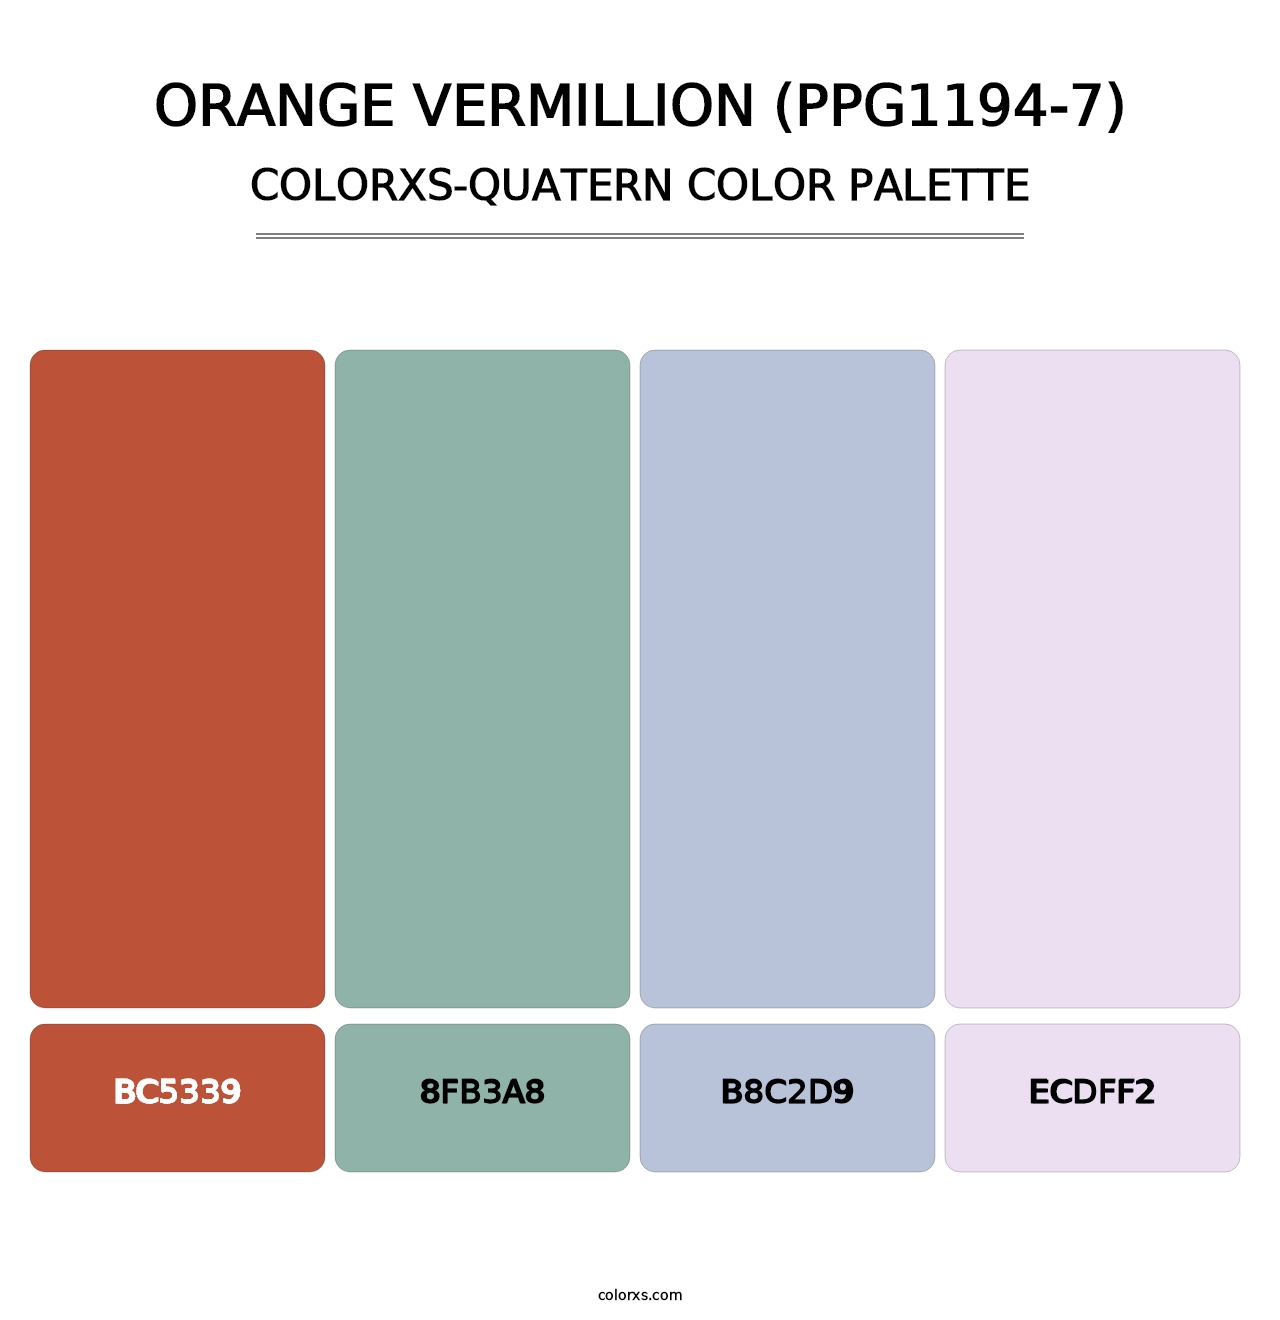 Orange Vermillion (PPG1194-7) - Colorxs Quatern Palette